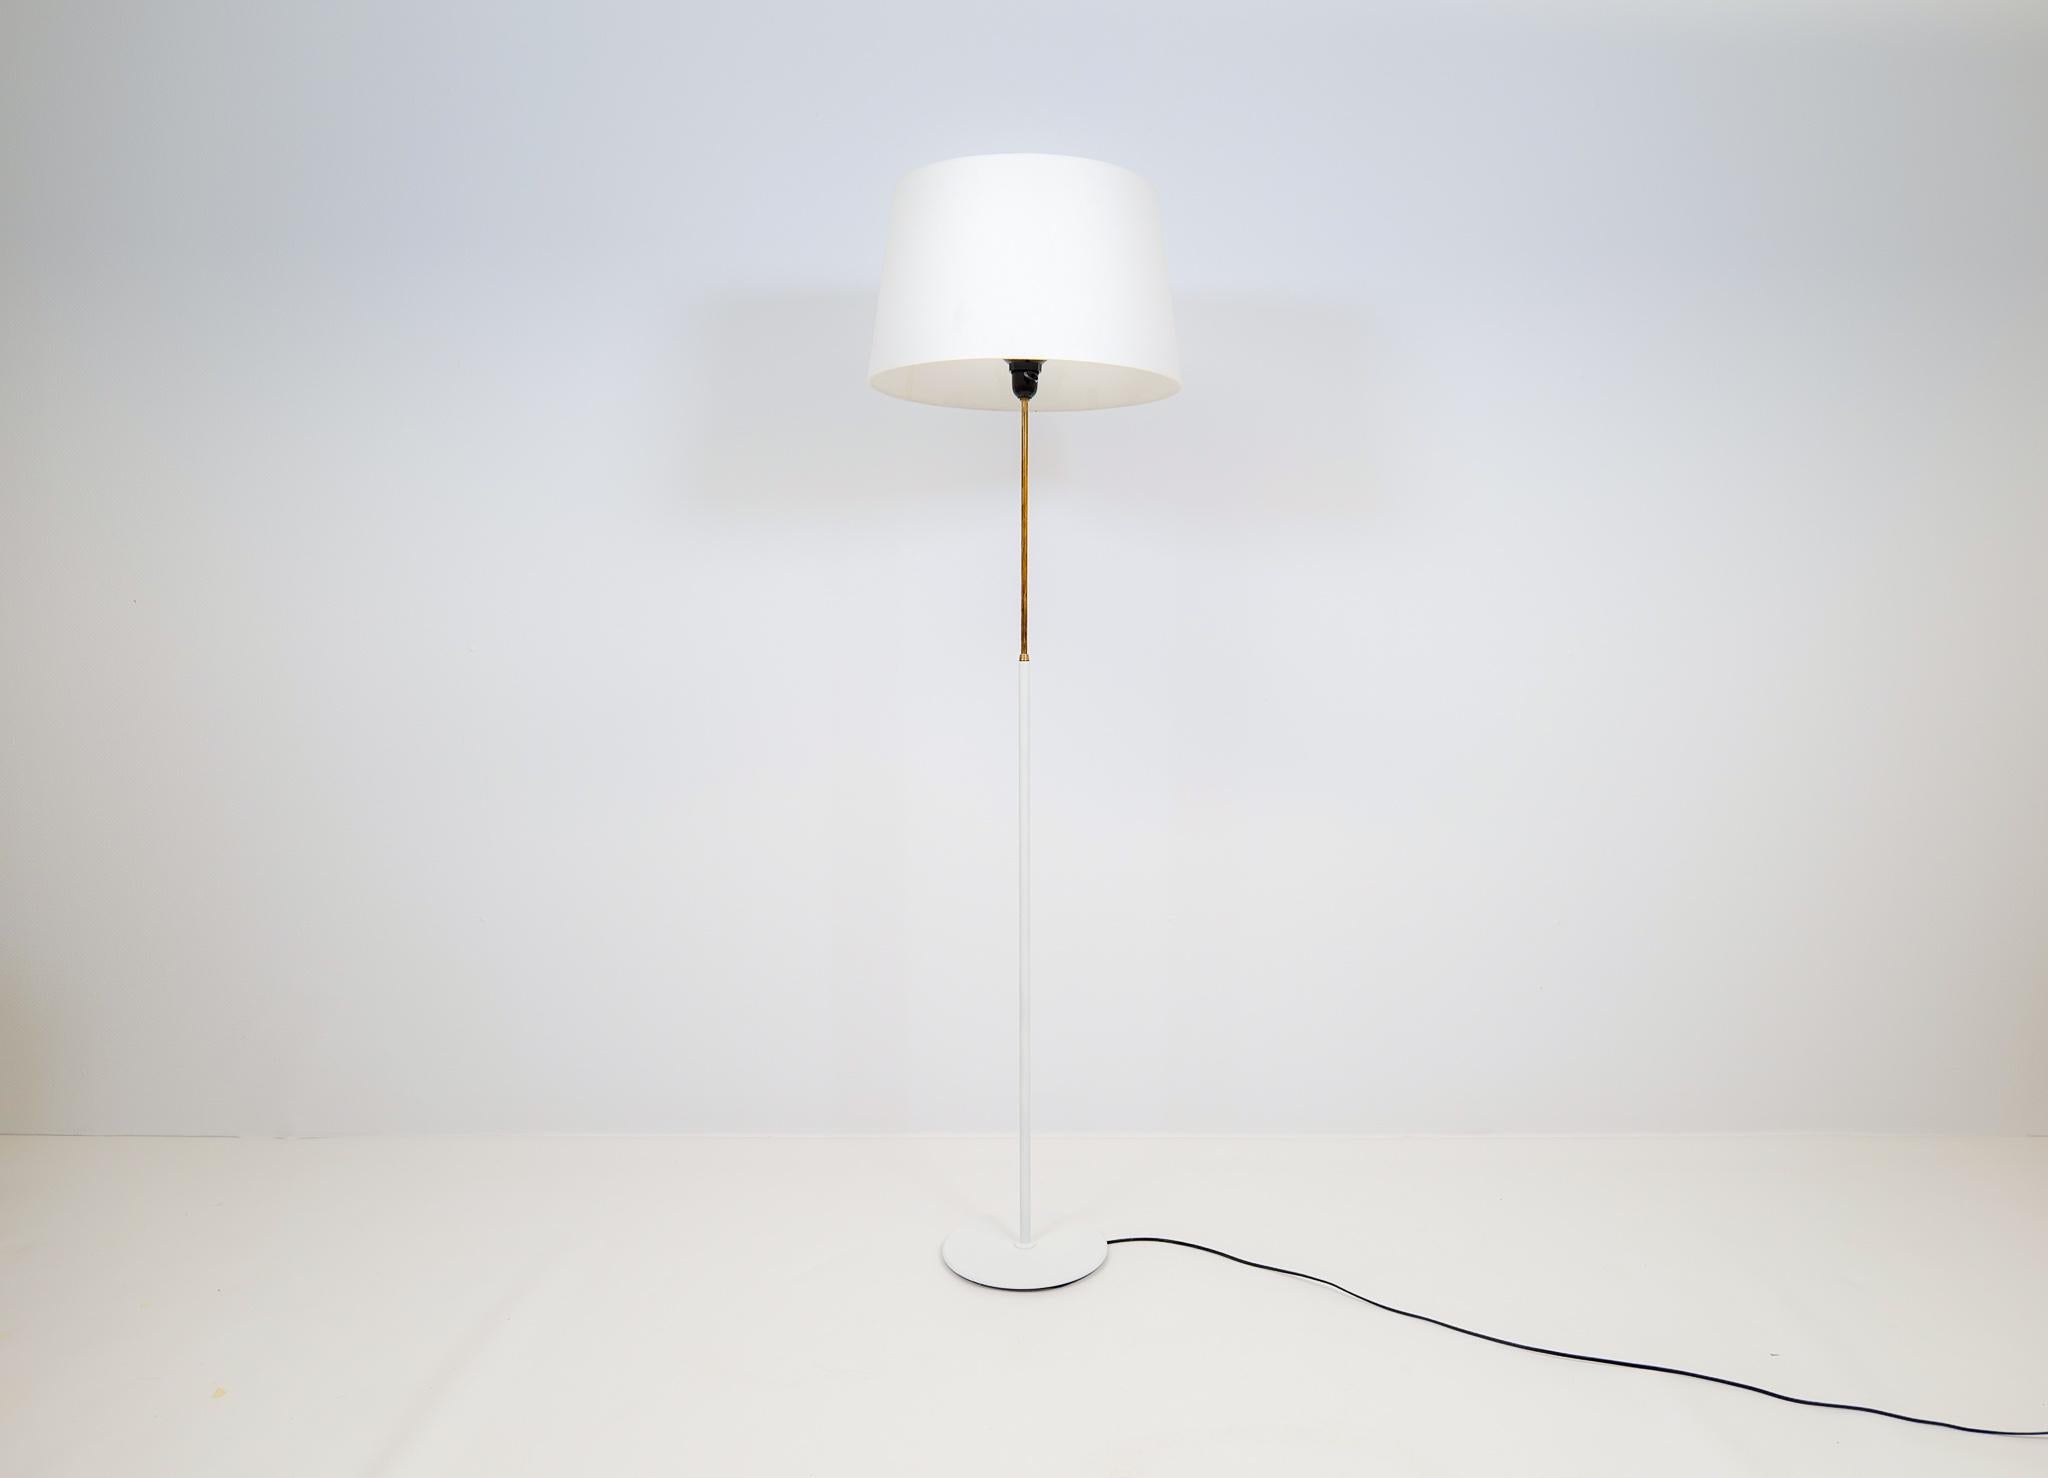 Ce lampadaire a été fabriqué par Bergboms Suède dans les années 1960. La base en métal blanc se marie bien avec la partie en laiton de la lampe.

Bon état de fonctionnement, recâblé, quelques marques sur la base. 

Mesures : Hauteur 144 cm